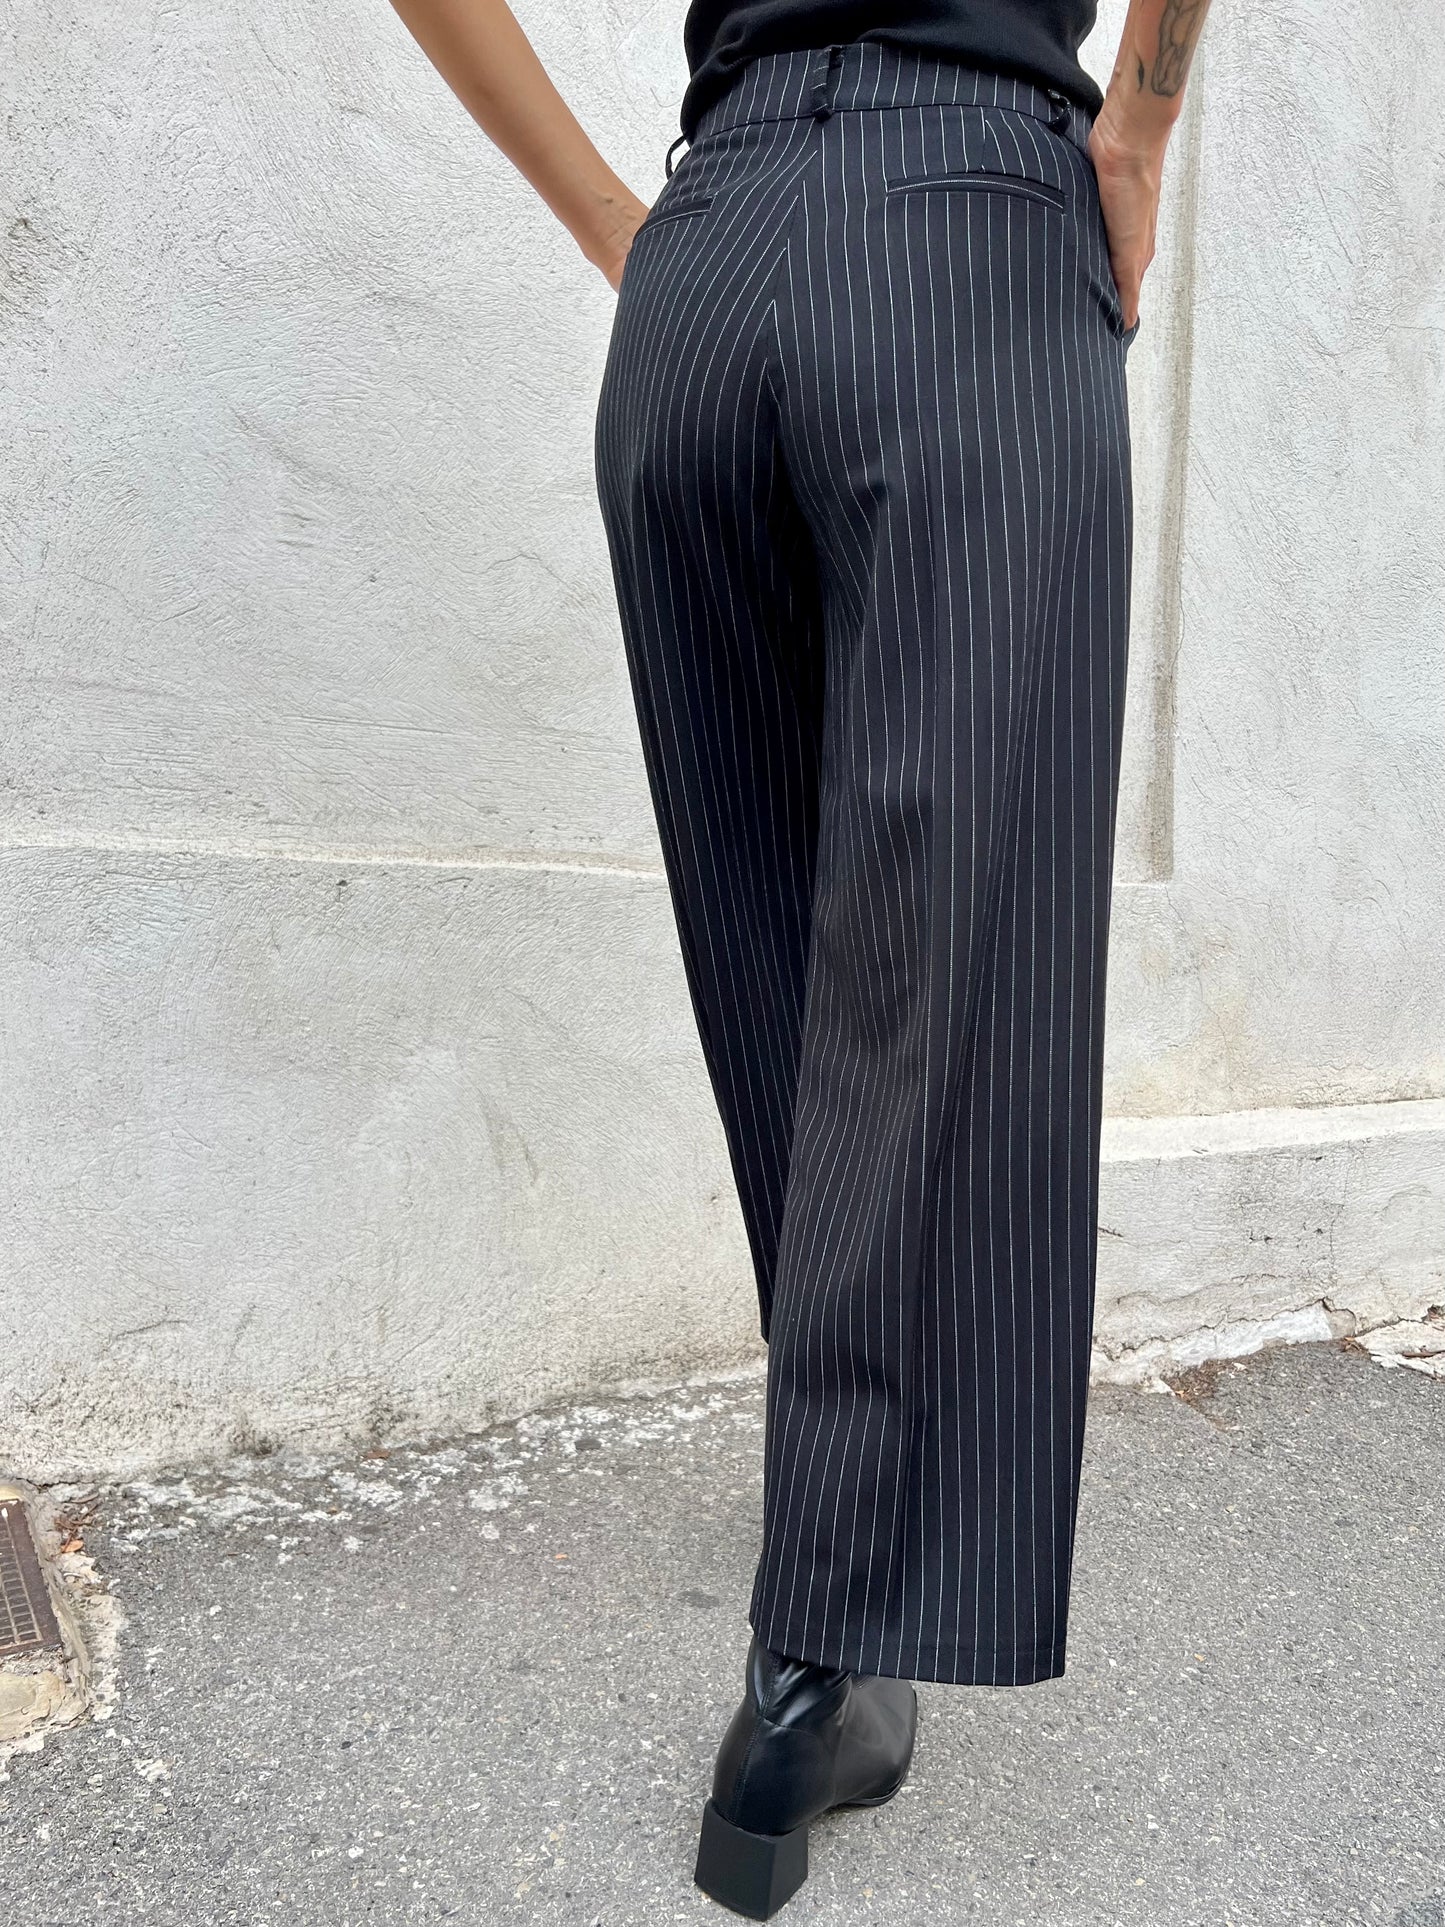 Pantalon tailleur hivernal à fines rayures noir